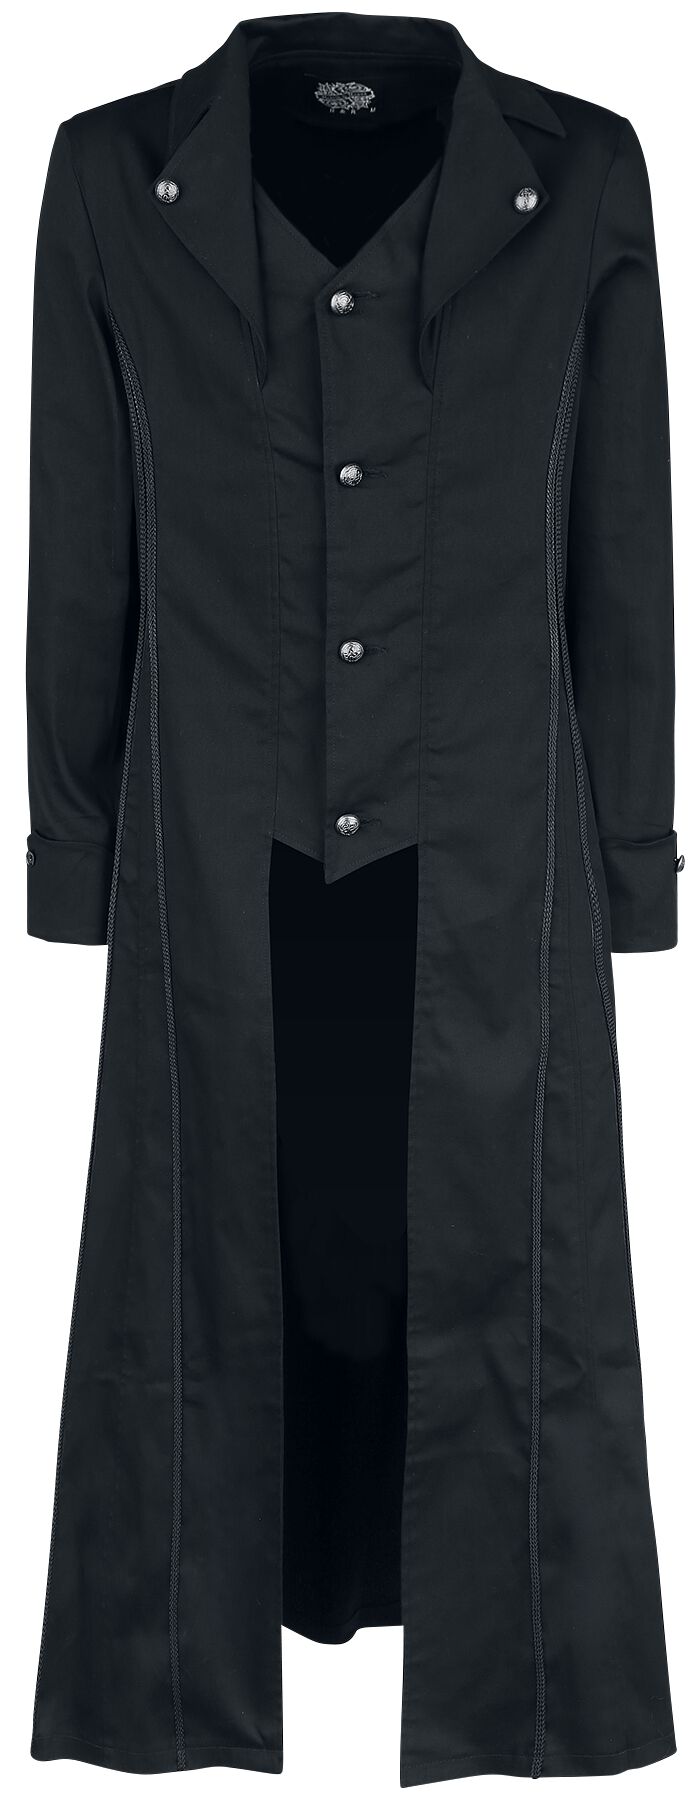 H&R London - Gothic Militärmantel - Black Classic Coat - S bis XXL - für Männer - Größe S - schwarz von H&R London